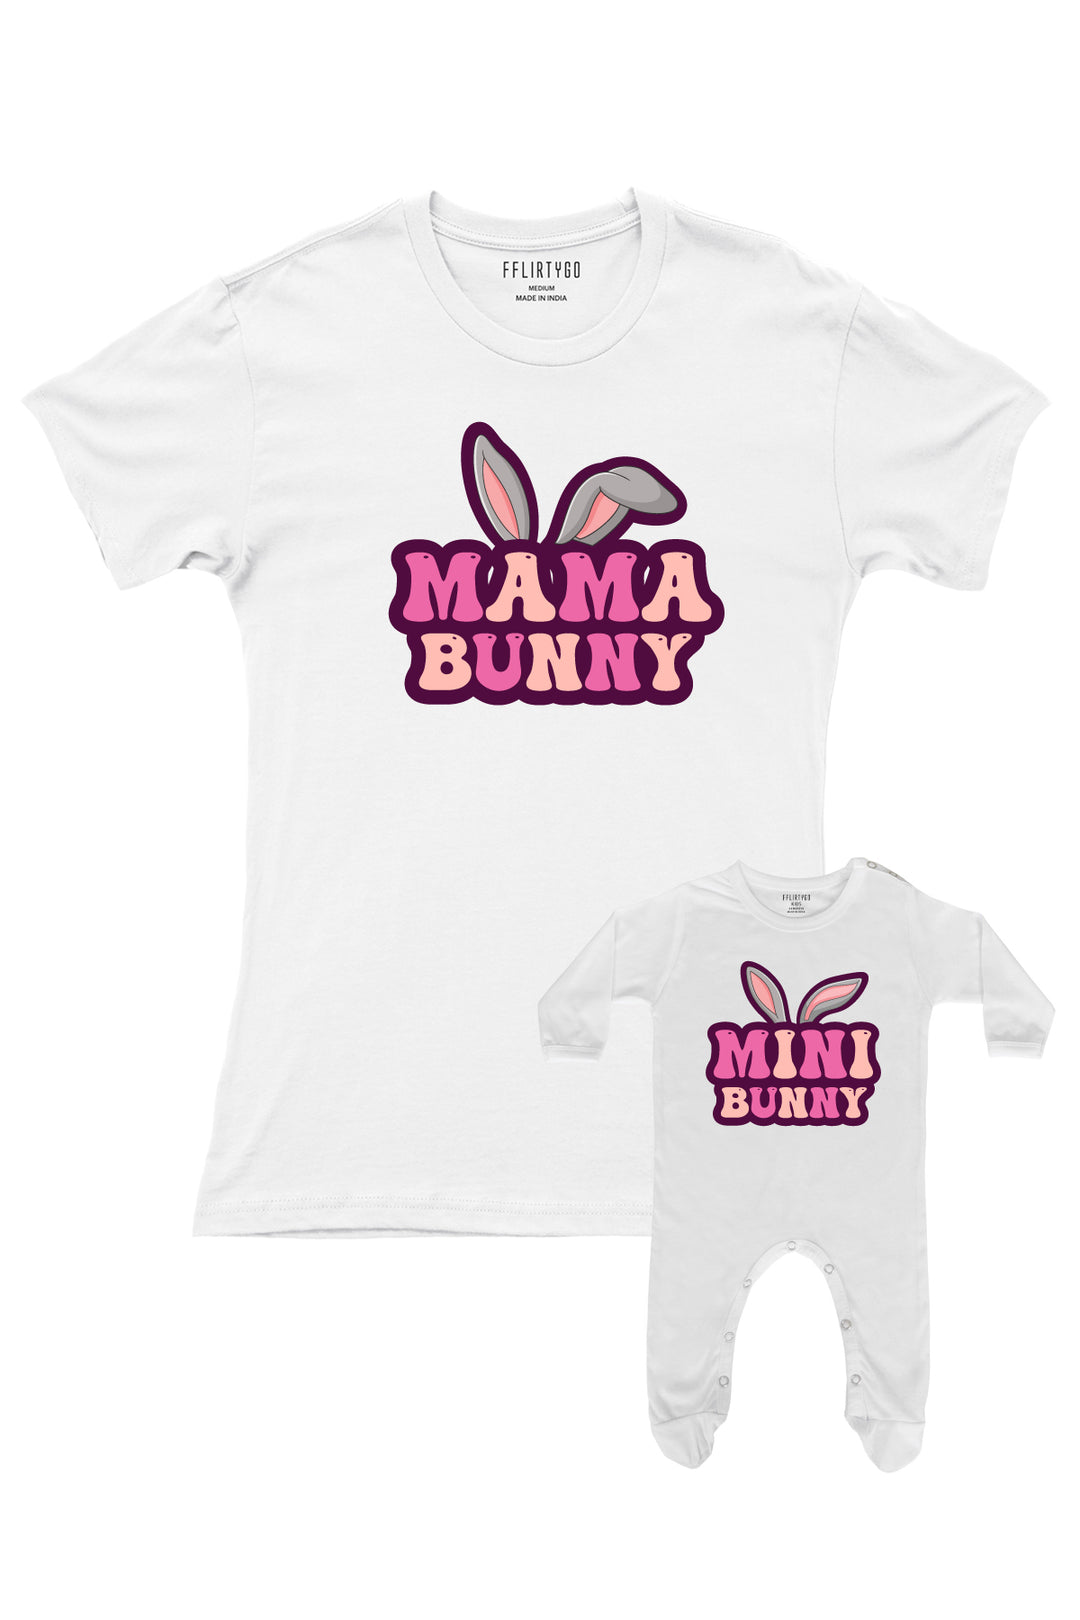 Mama Bunny - Mini Bunny